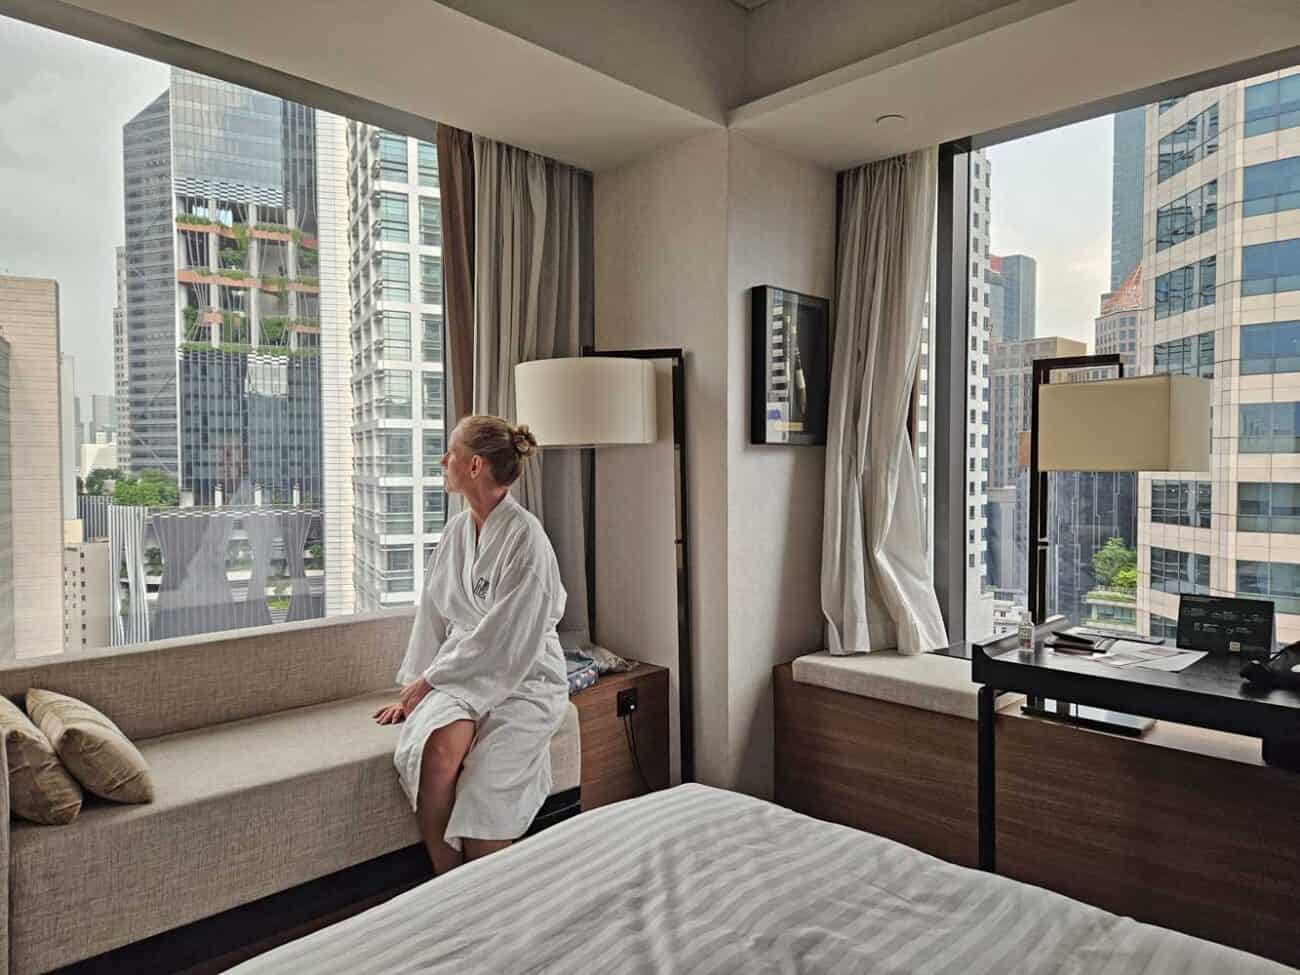 Hotel Empfehlung für zentrales Hotel in Singapur